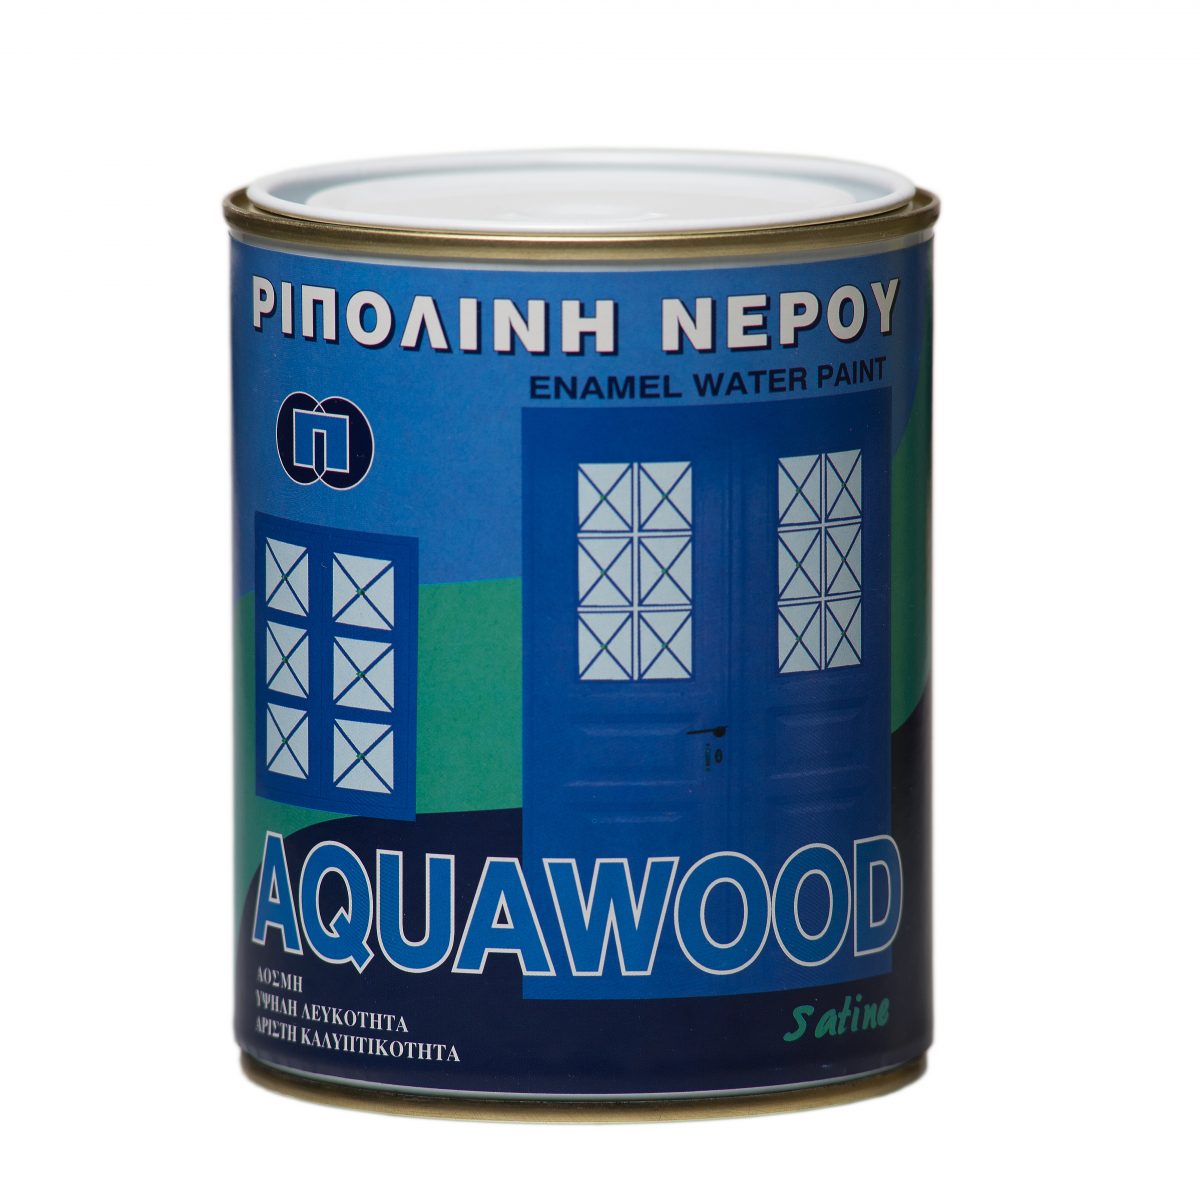 Aquawood